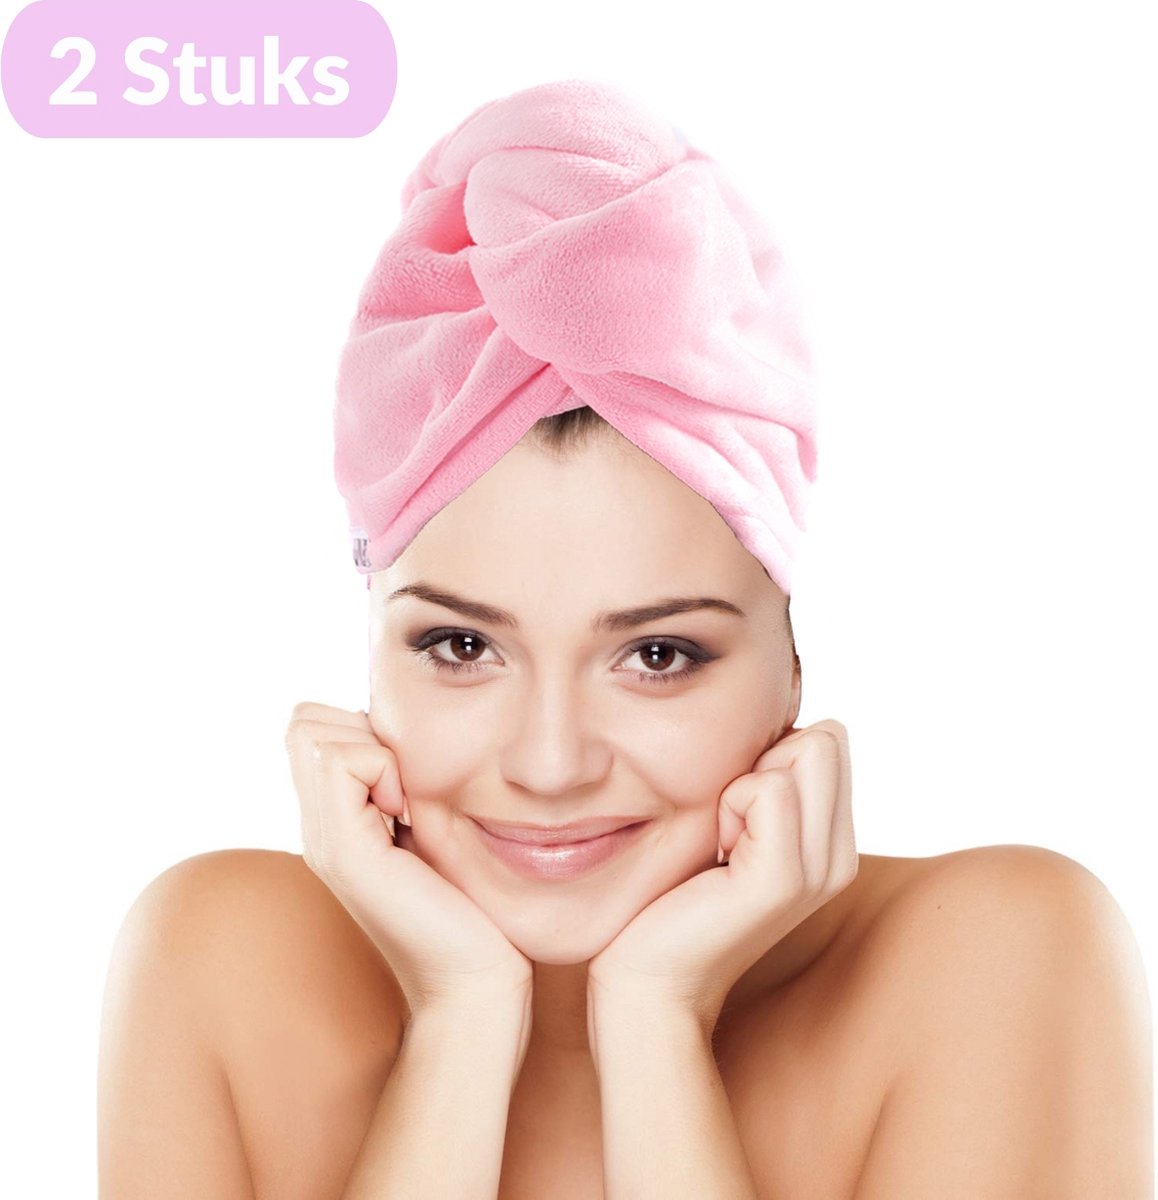 UNBOX 2 Stuks - Haarhanddoek - Microvezel Handdoek - Microvezel Handdoek Haar - Alle Haartypen - 25x70 - Extra Groot - Roze